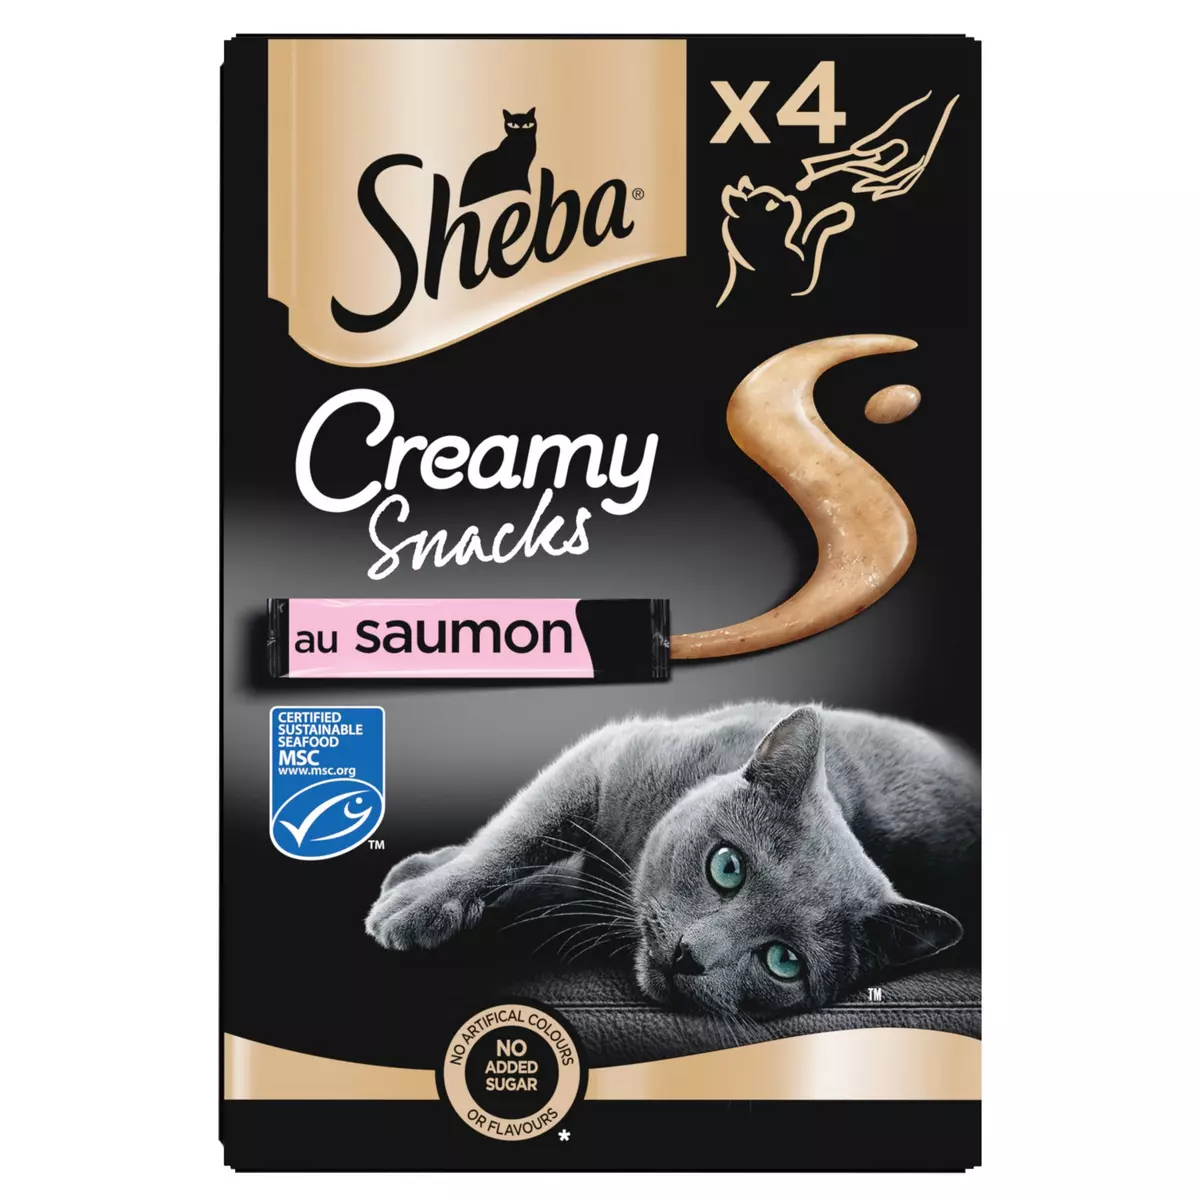 SHEBA Creamy Snacks friandises au saumon MSC pour chat adulte 4x12g